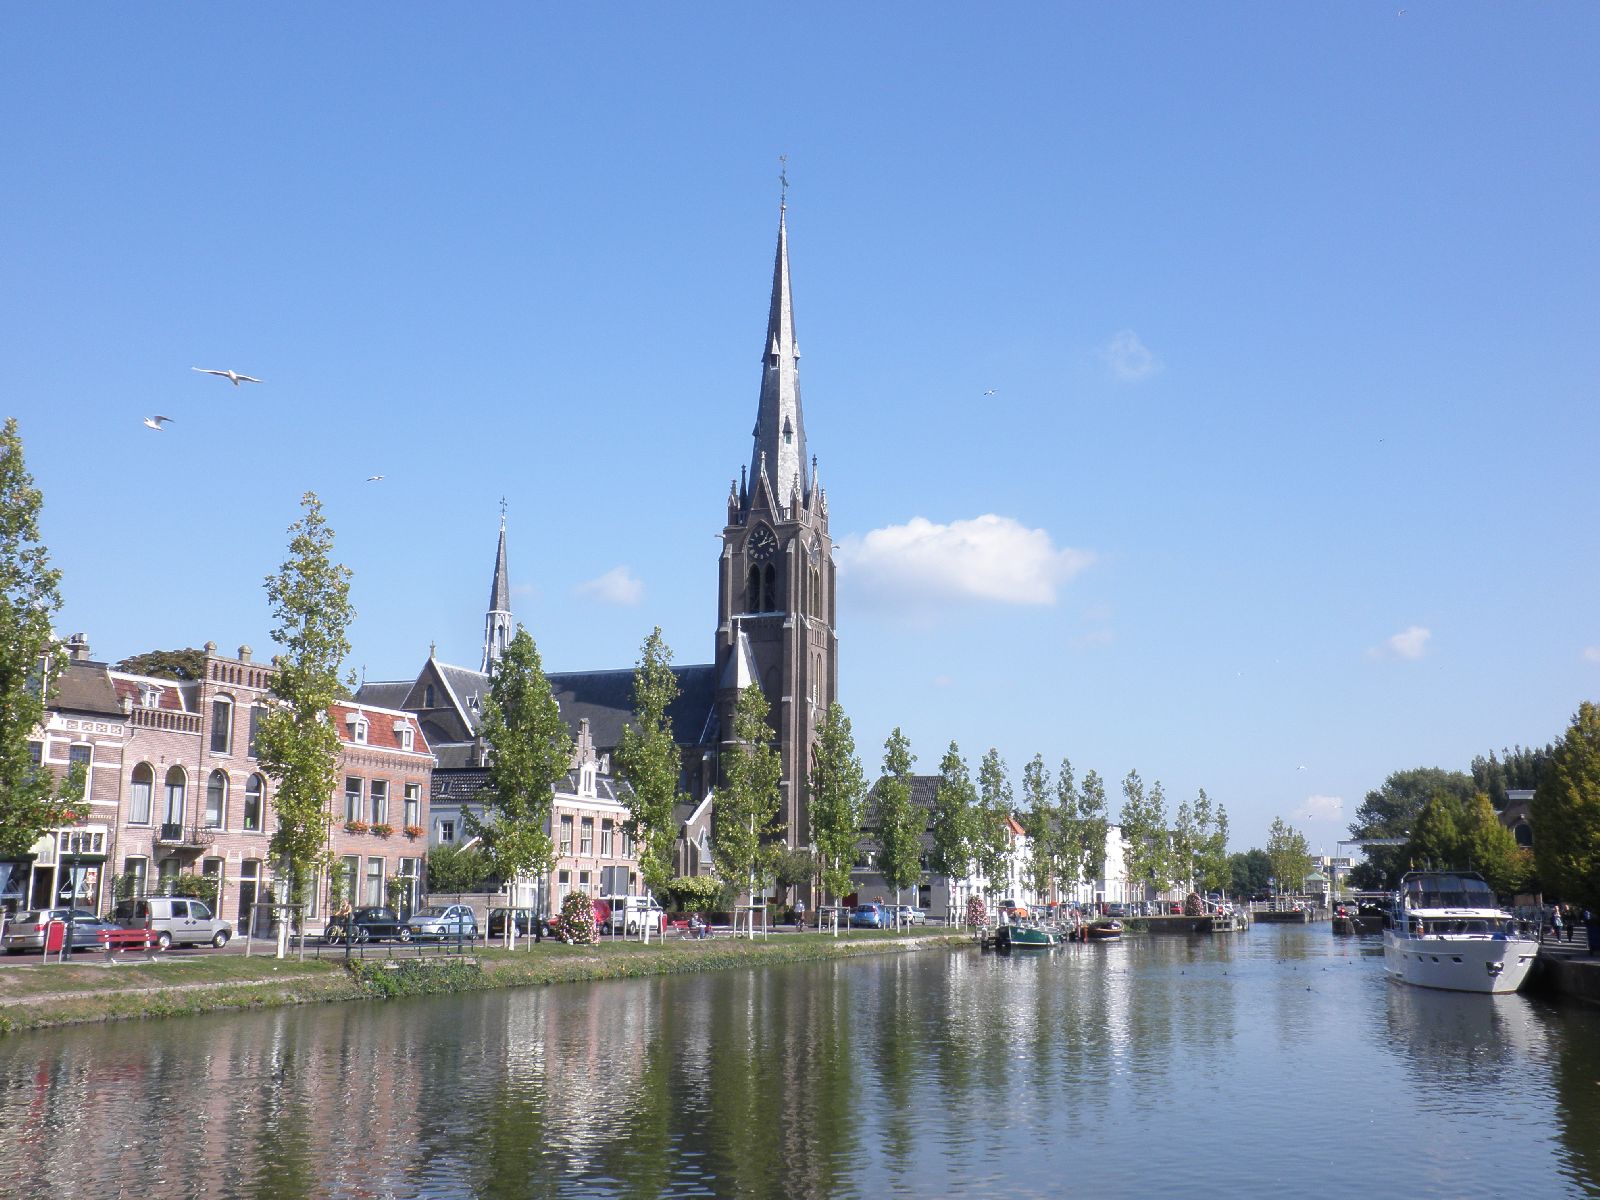 Kanál protékající městečkem Weesp, Nizozemsko